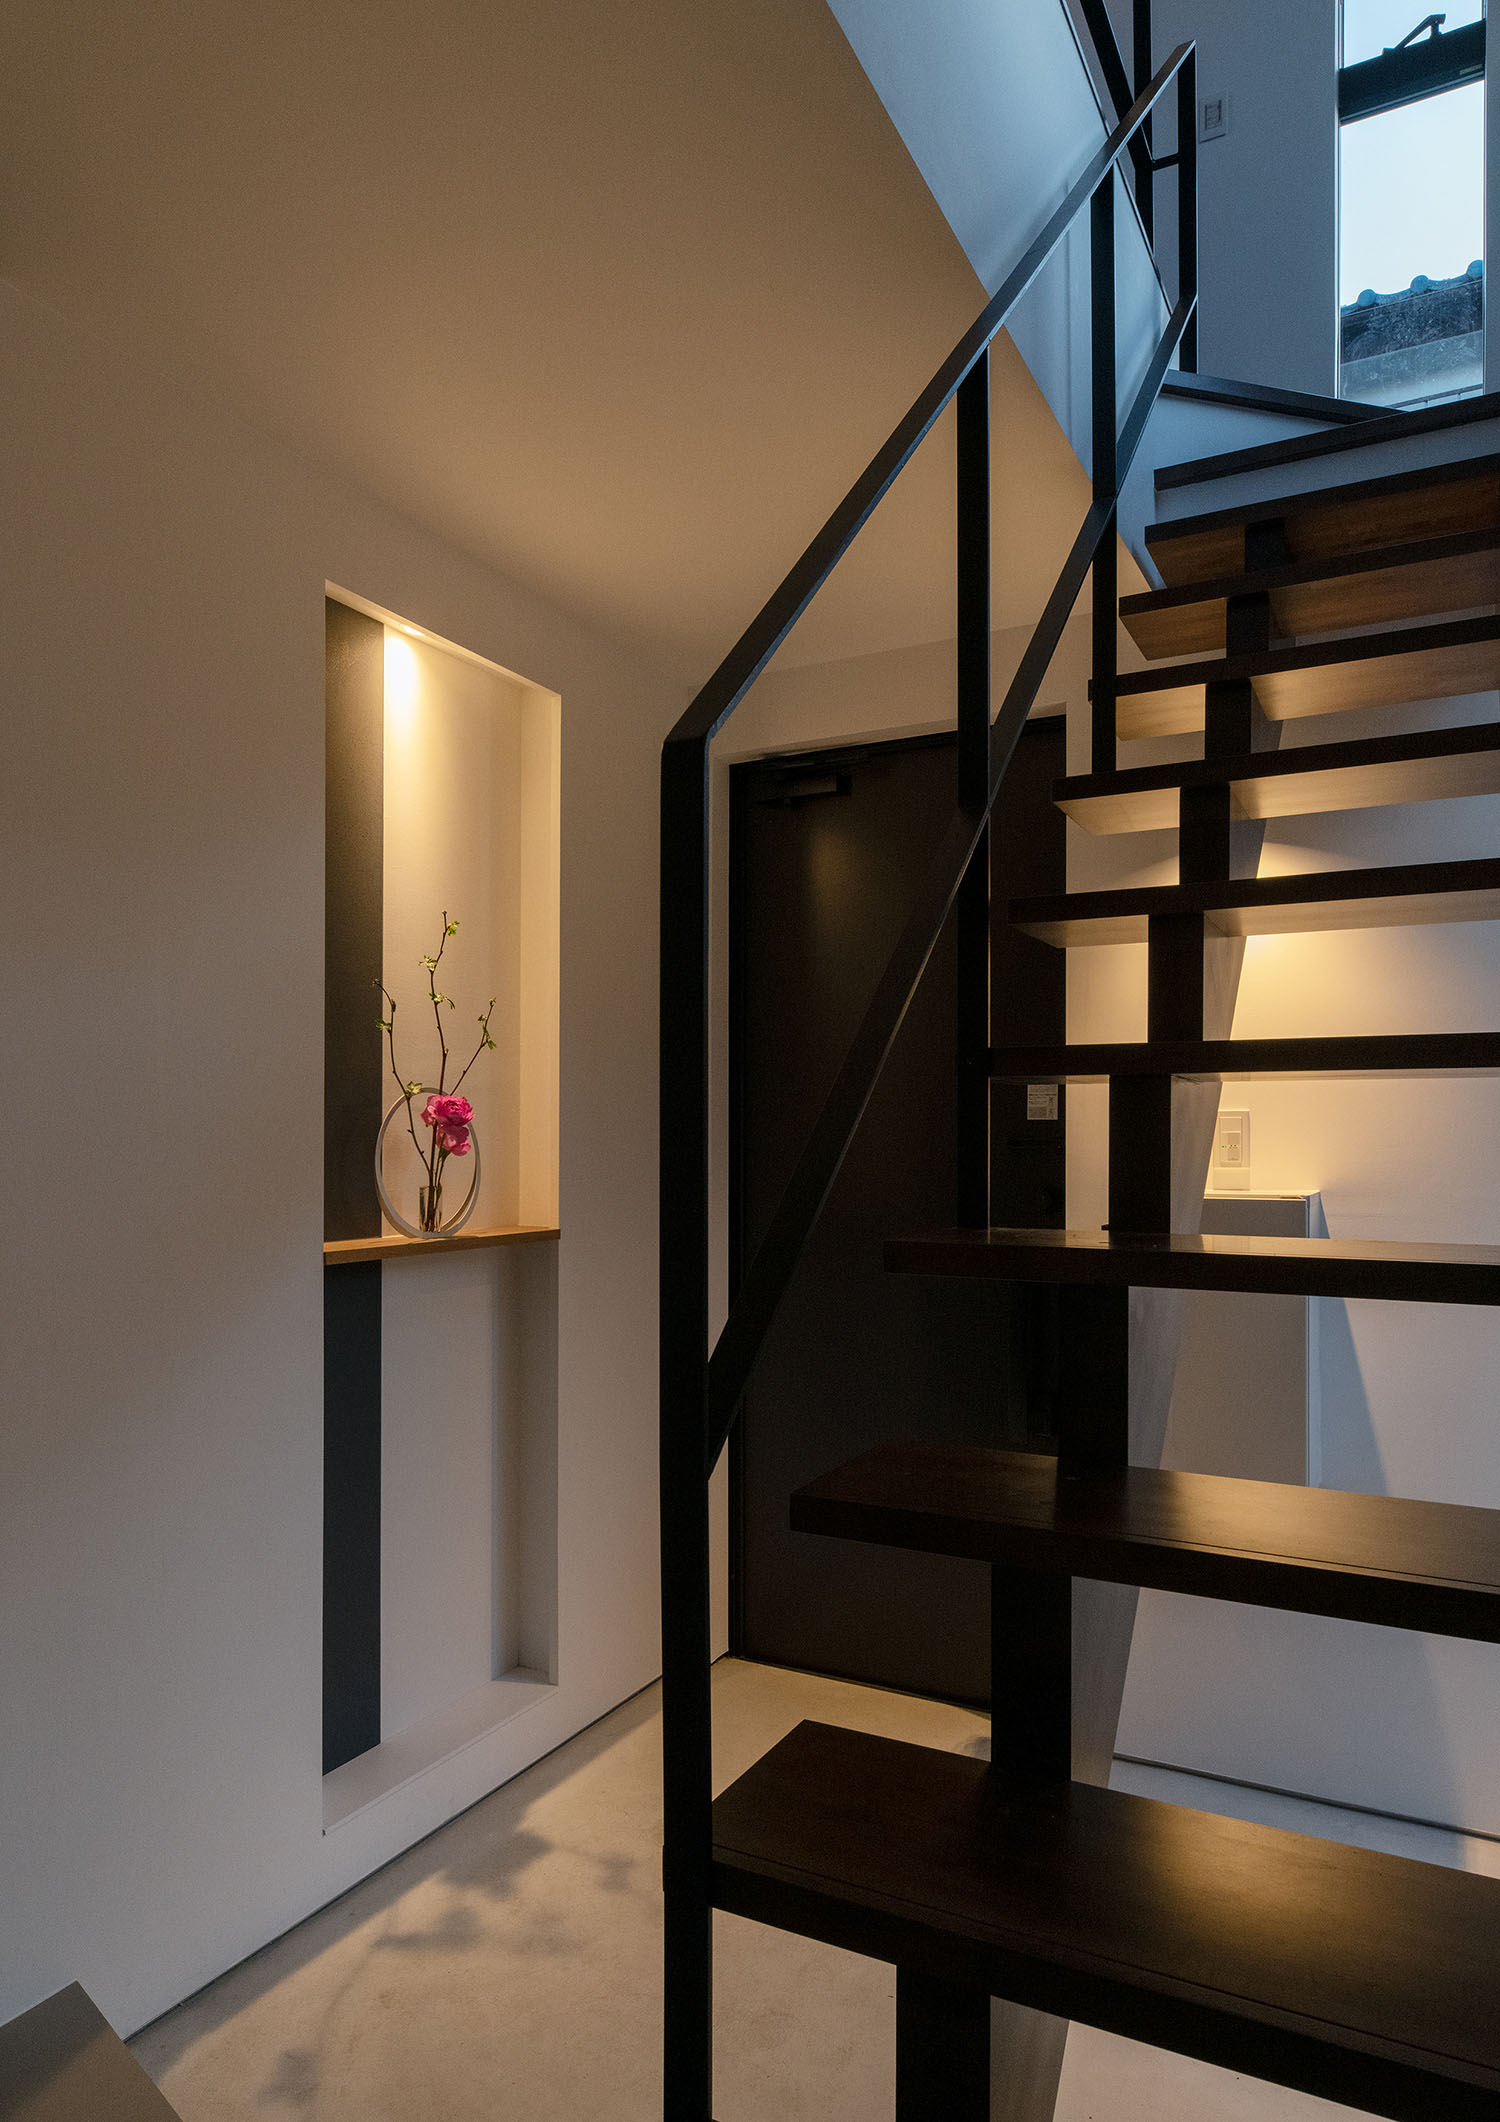 スケルトン階段越しに、飾り棚の間接照明が玄関を照らす様子・デザイン住宅